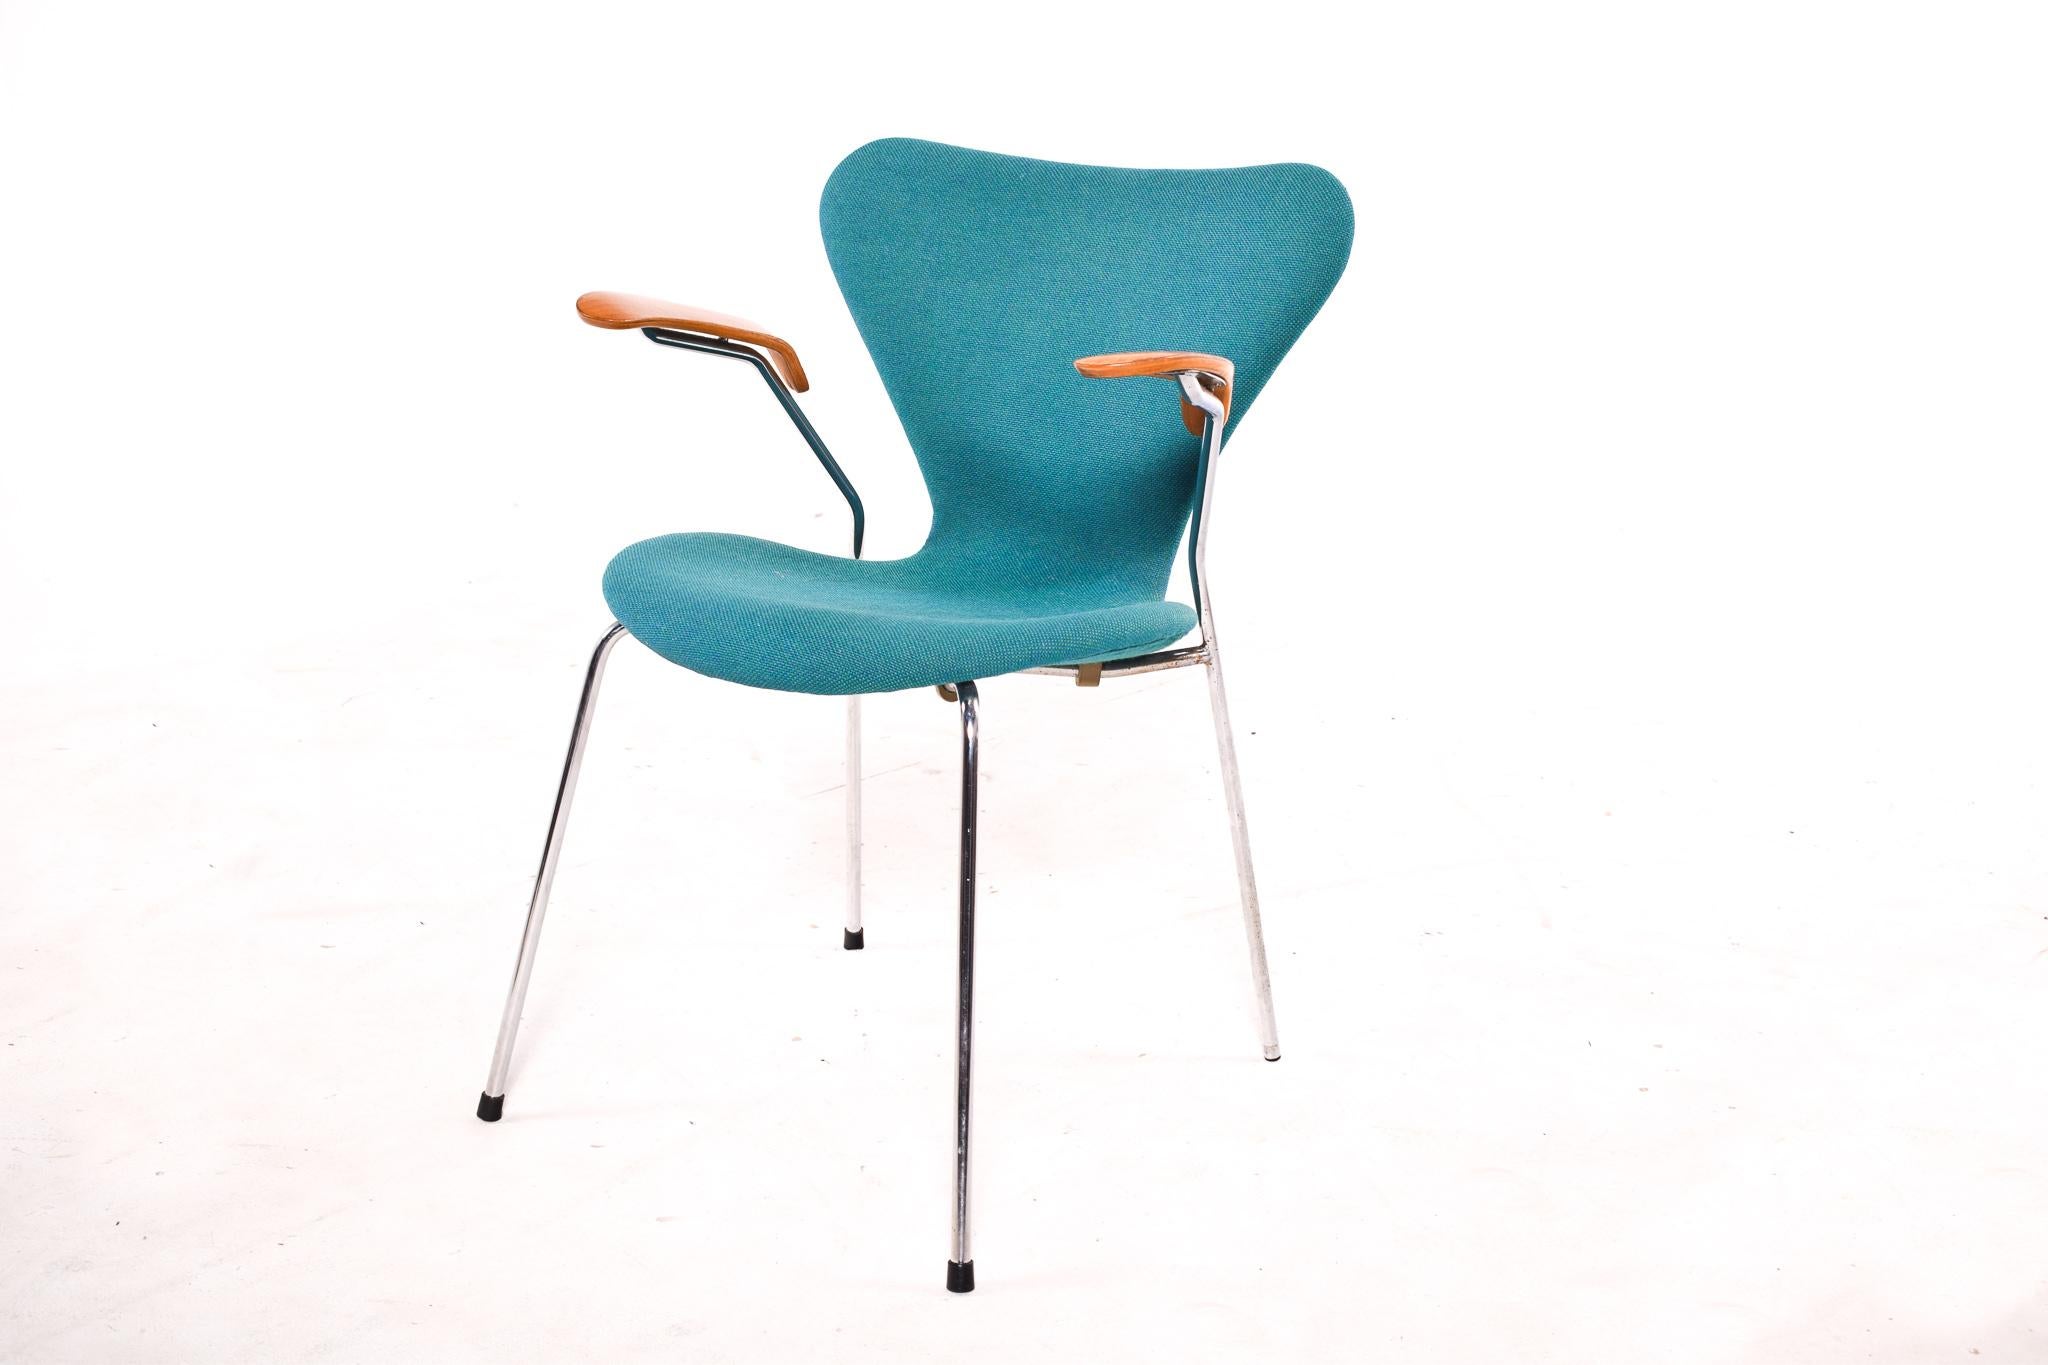 Fauteuil célèbre série 7, design Arne Jacobsen, avec revêtement en tissu turquoise, produit par Fritz Hansen. La structure est en métal, l'assise et le dossier sont en contreplaqué moulé. Les accoudoirs sont en contreplaqué. C'est signé sous le